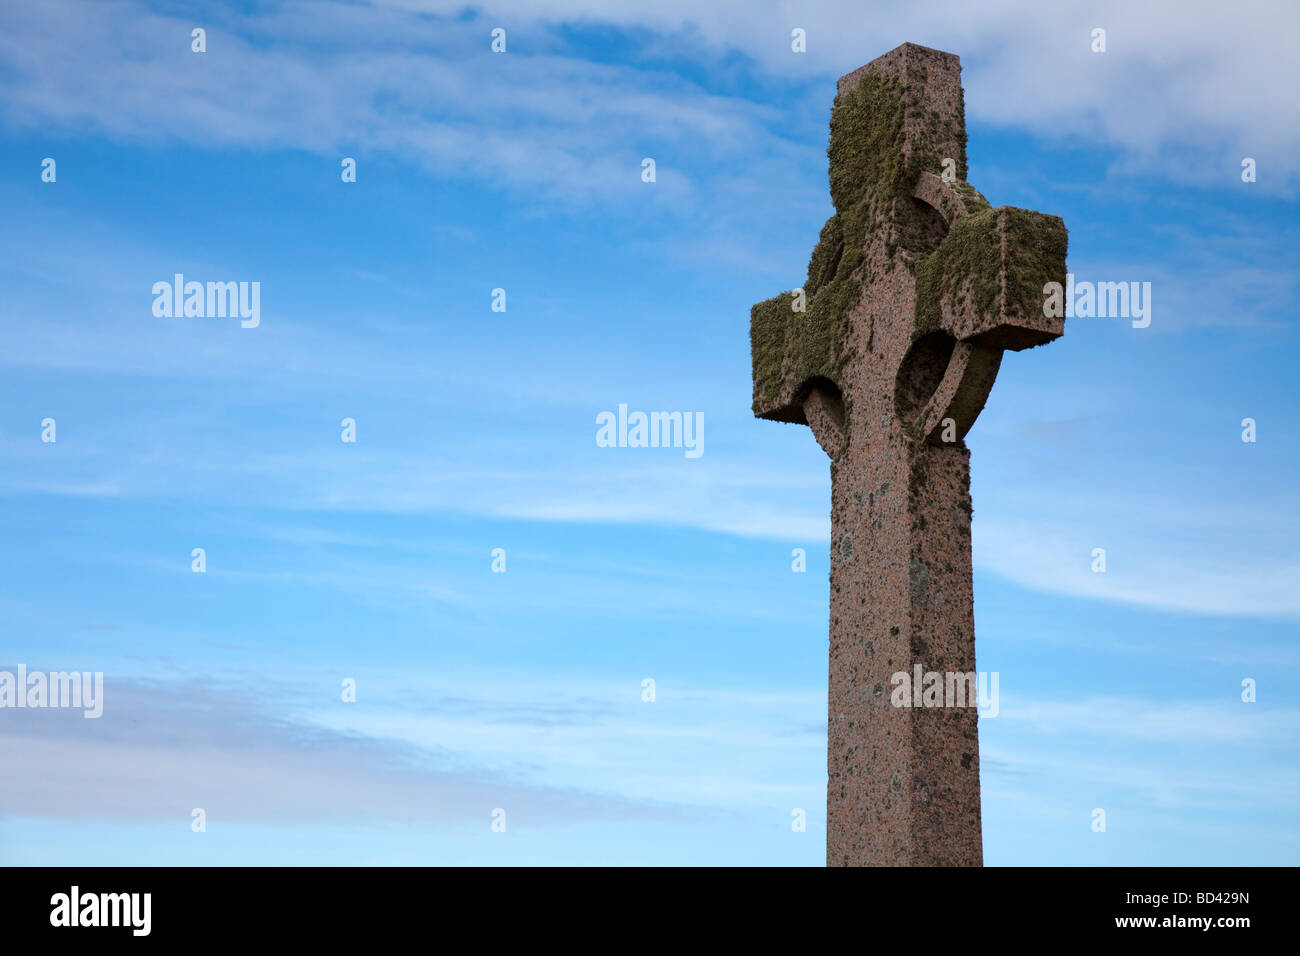 Croix celtique recouverts de mousse et de lichen, photographiée à Iona, une petite île dans le groupe Hébrides intérieures au large de l'ouest de l'Ecosse Banque D'Images